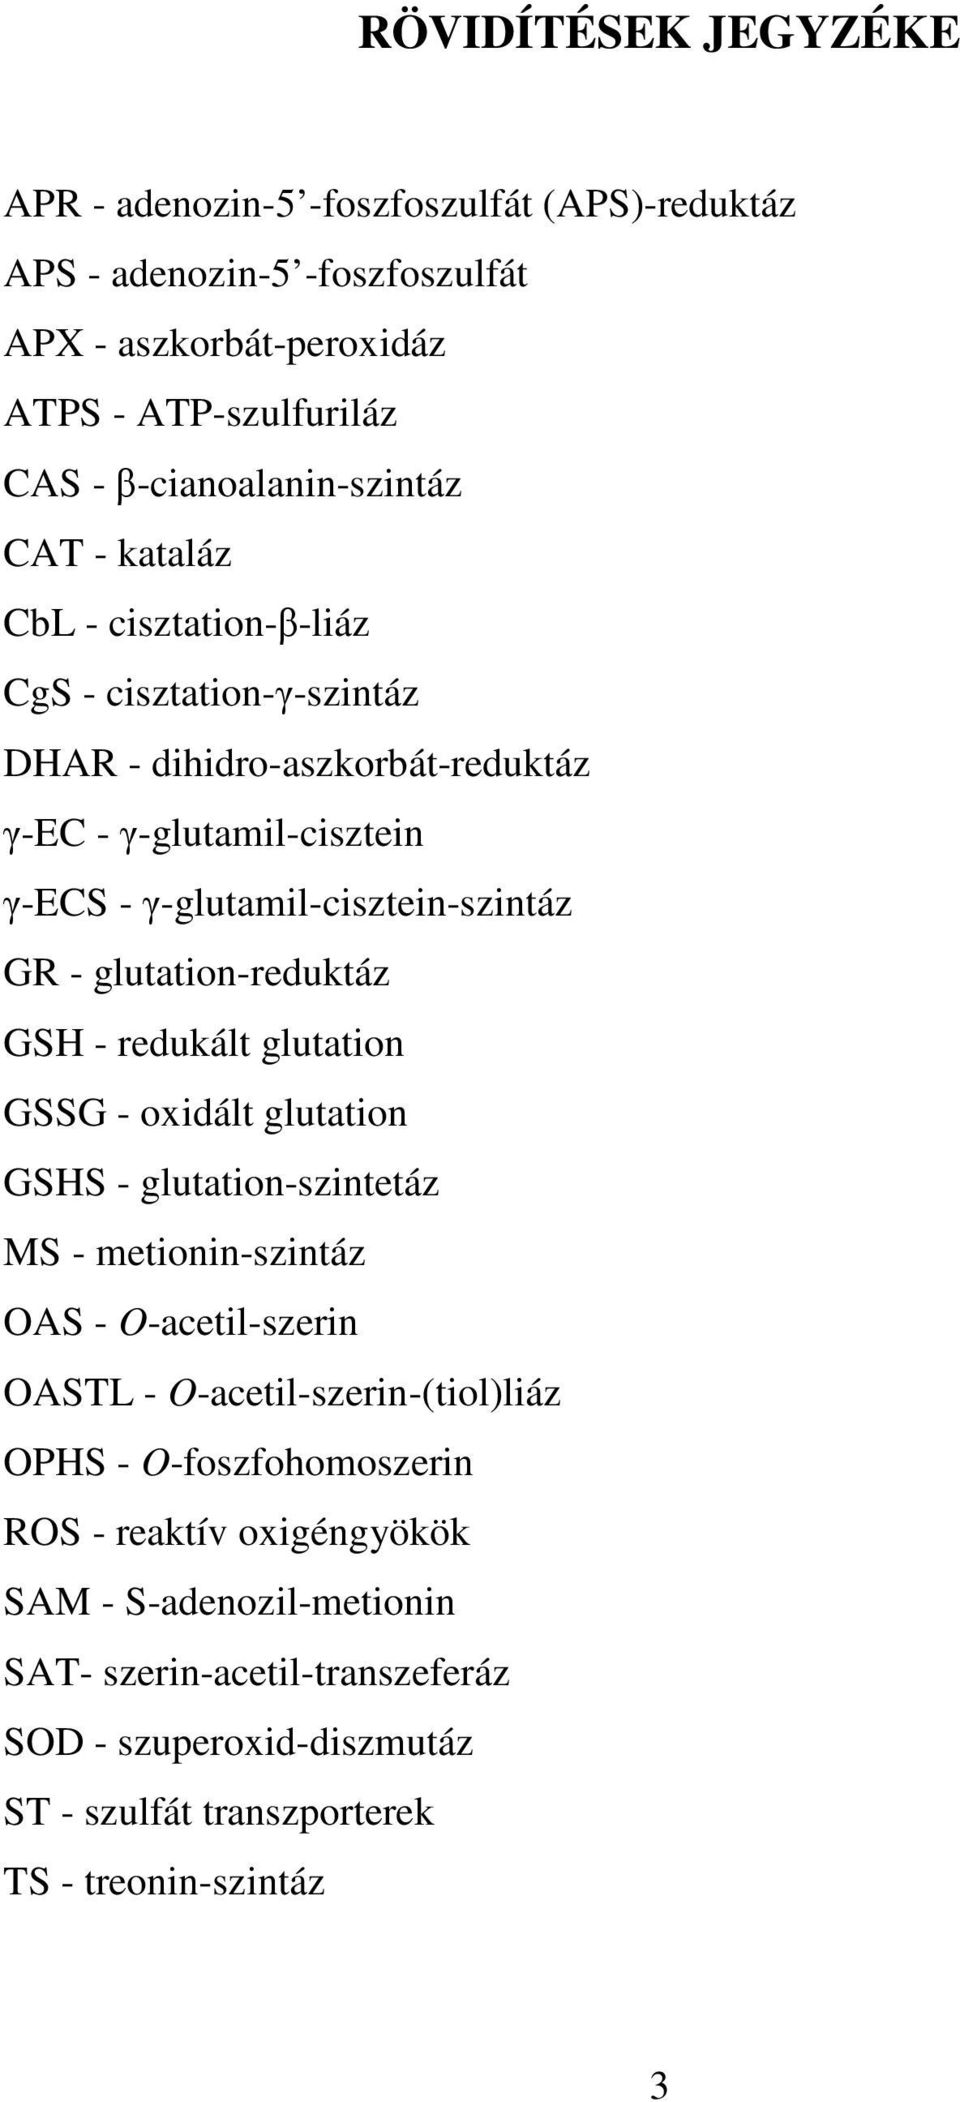 glutation-reduktáz GSH - redukált glutation GSSG - oxidált glutation GSHS - glutation-szintetáz MS - metionin-szintáz OAS - O-acetil-szerin OASTL - O-acetil-szerin-(tiol)liáz